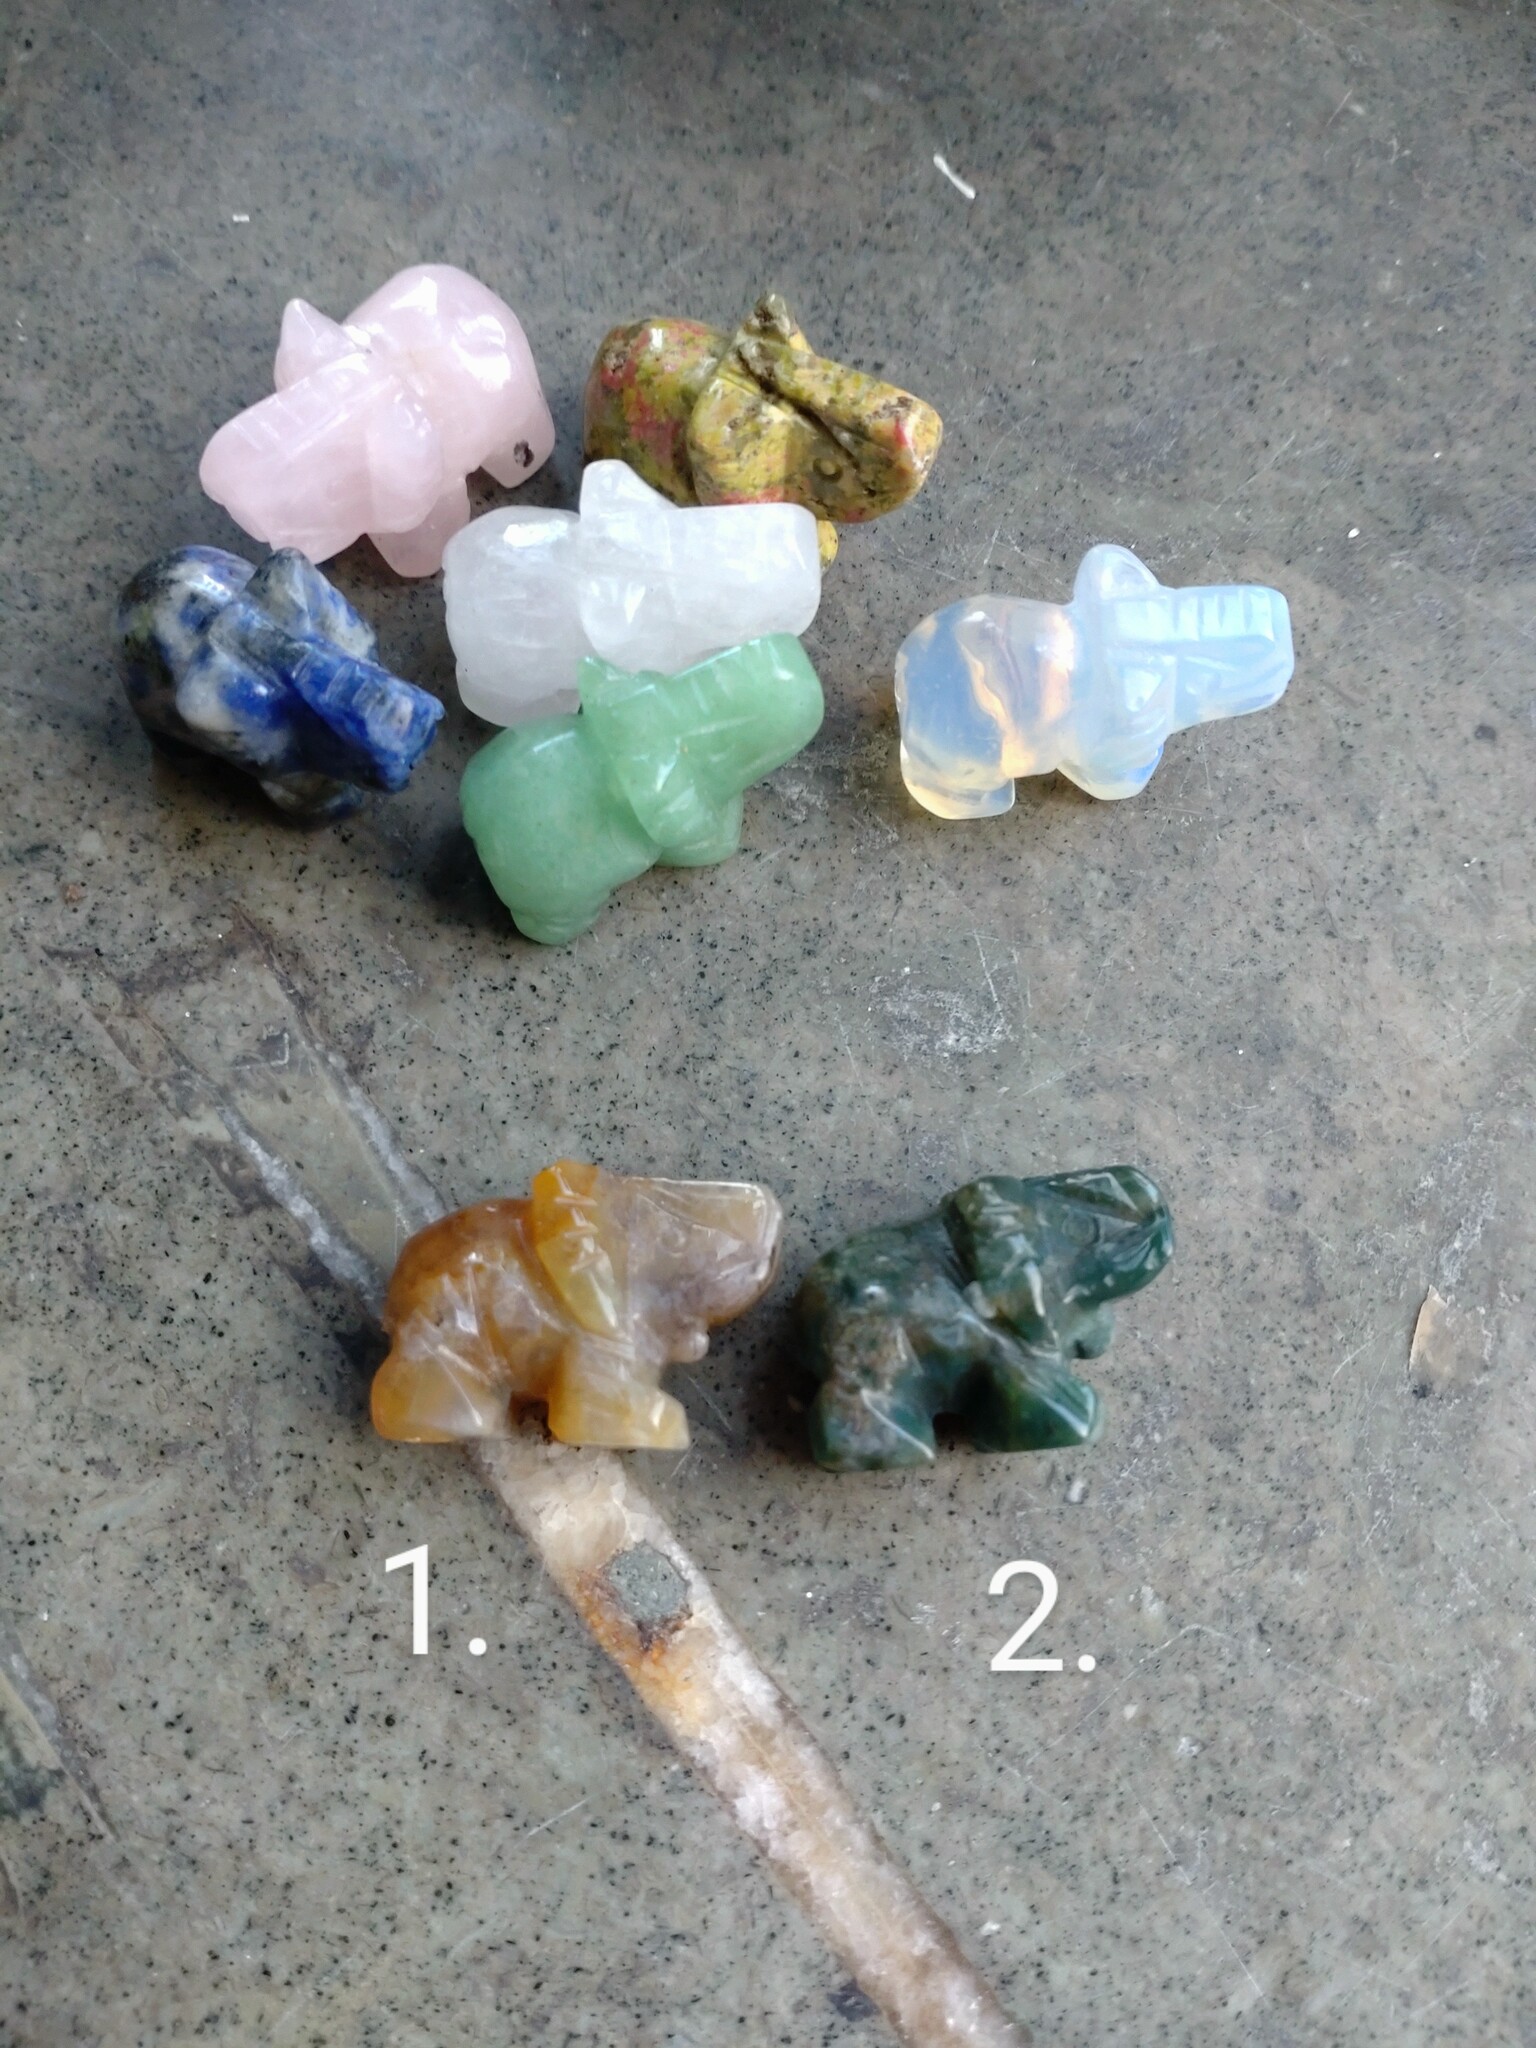 Elefanter av olika kristaller 2.5 cm